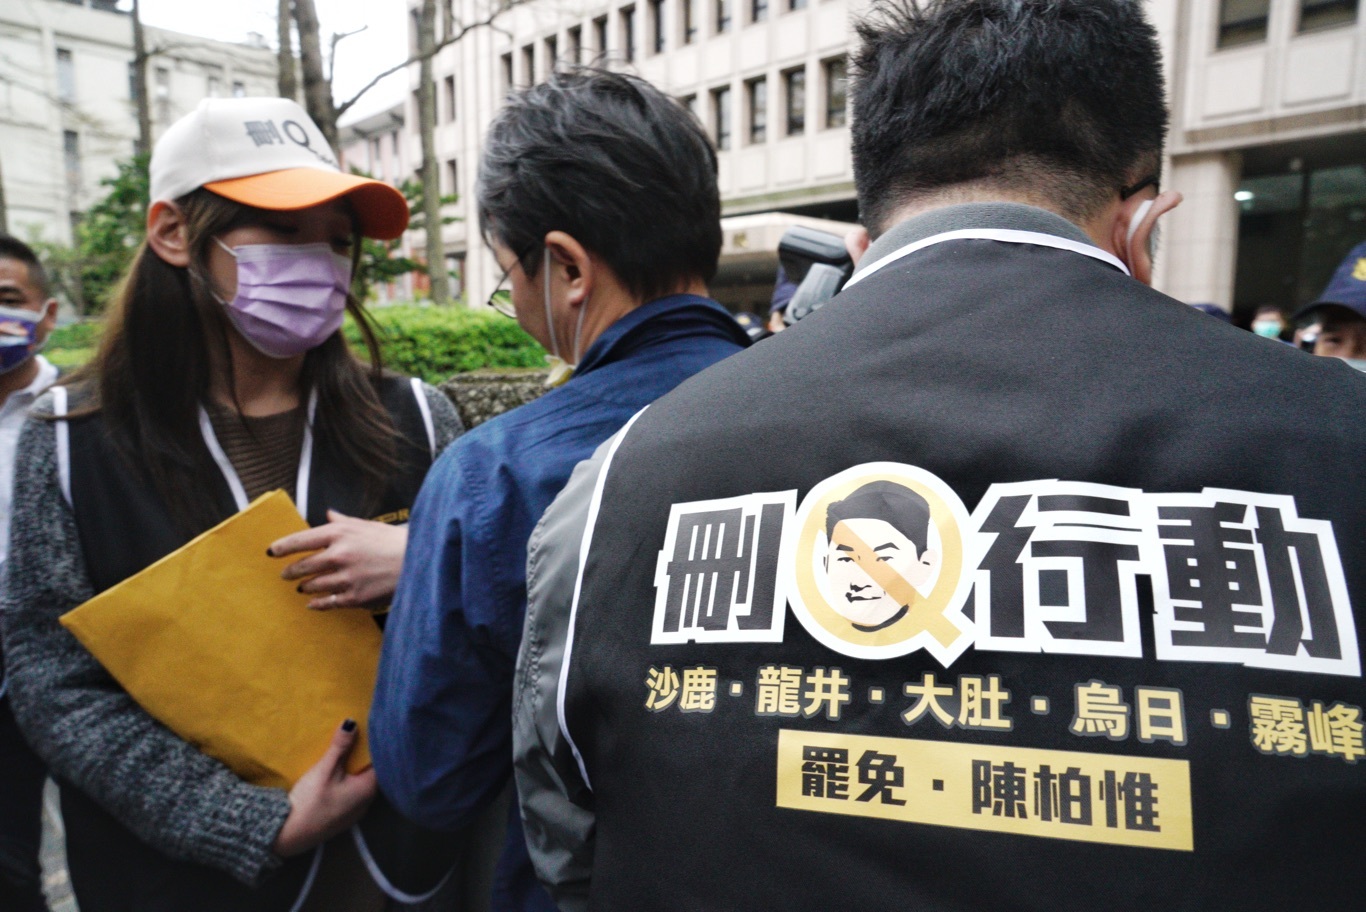 傳里長施壓求簽「刪Q」連署書  台灣基進籲檢舉「散佈恐懼」幫手 | 政治